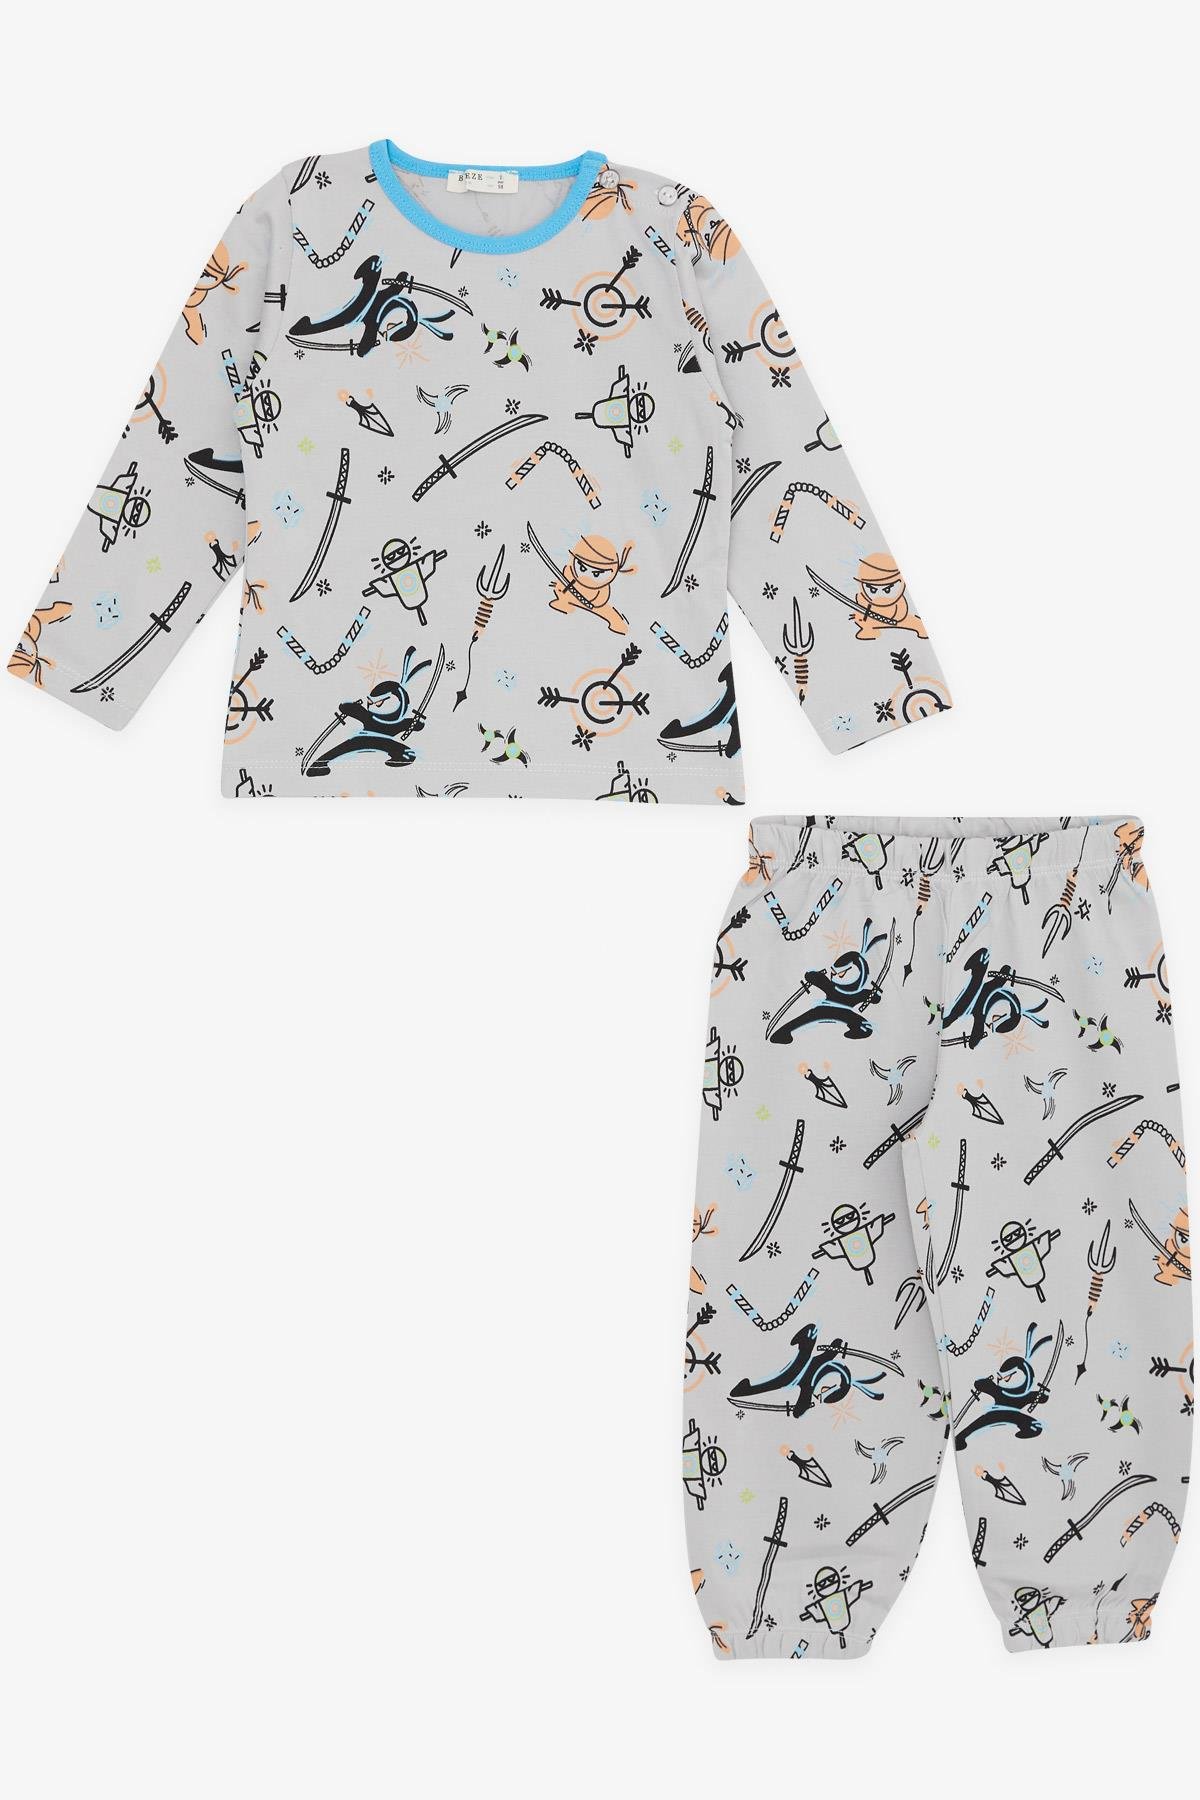 Erkek Bebek Pijama Takımı Spor Temalı Gri 9 Ay-3 Yaş - Yumuşak Kumaşlı  Çocuk Pijamaları | Breeze